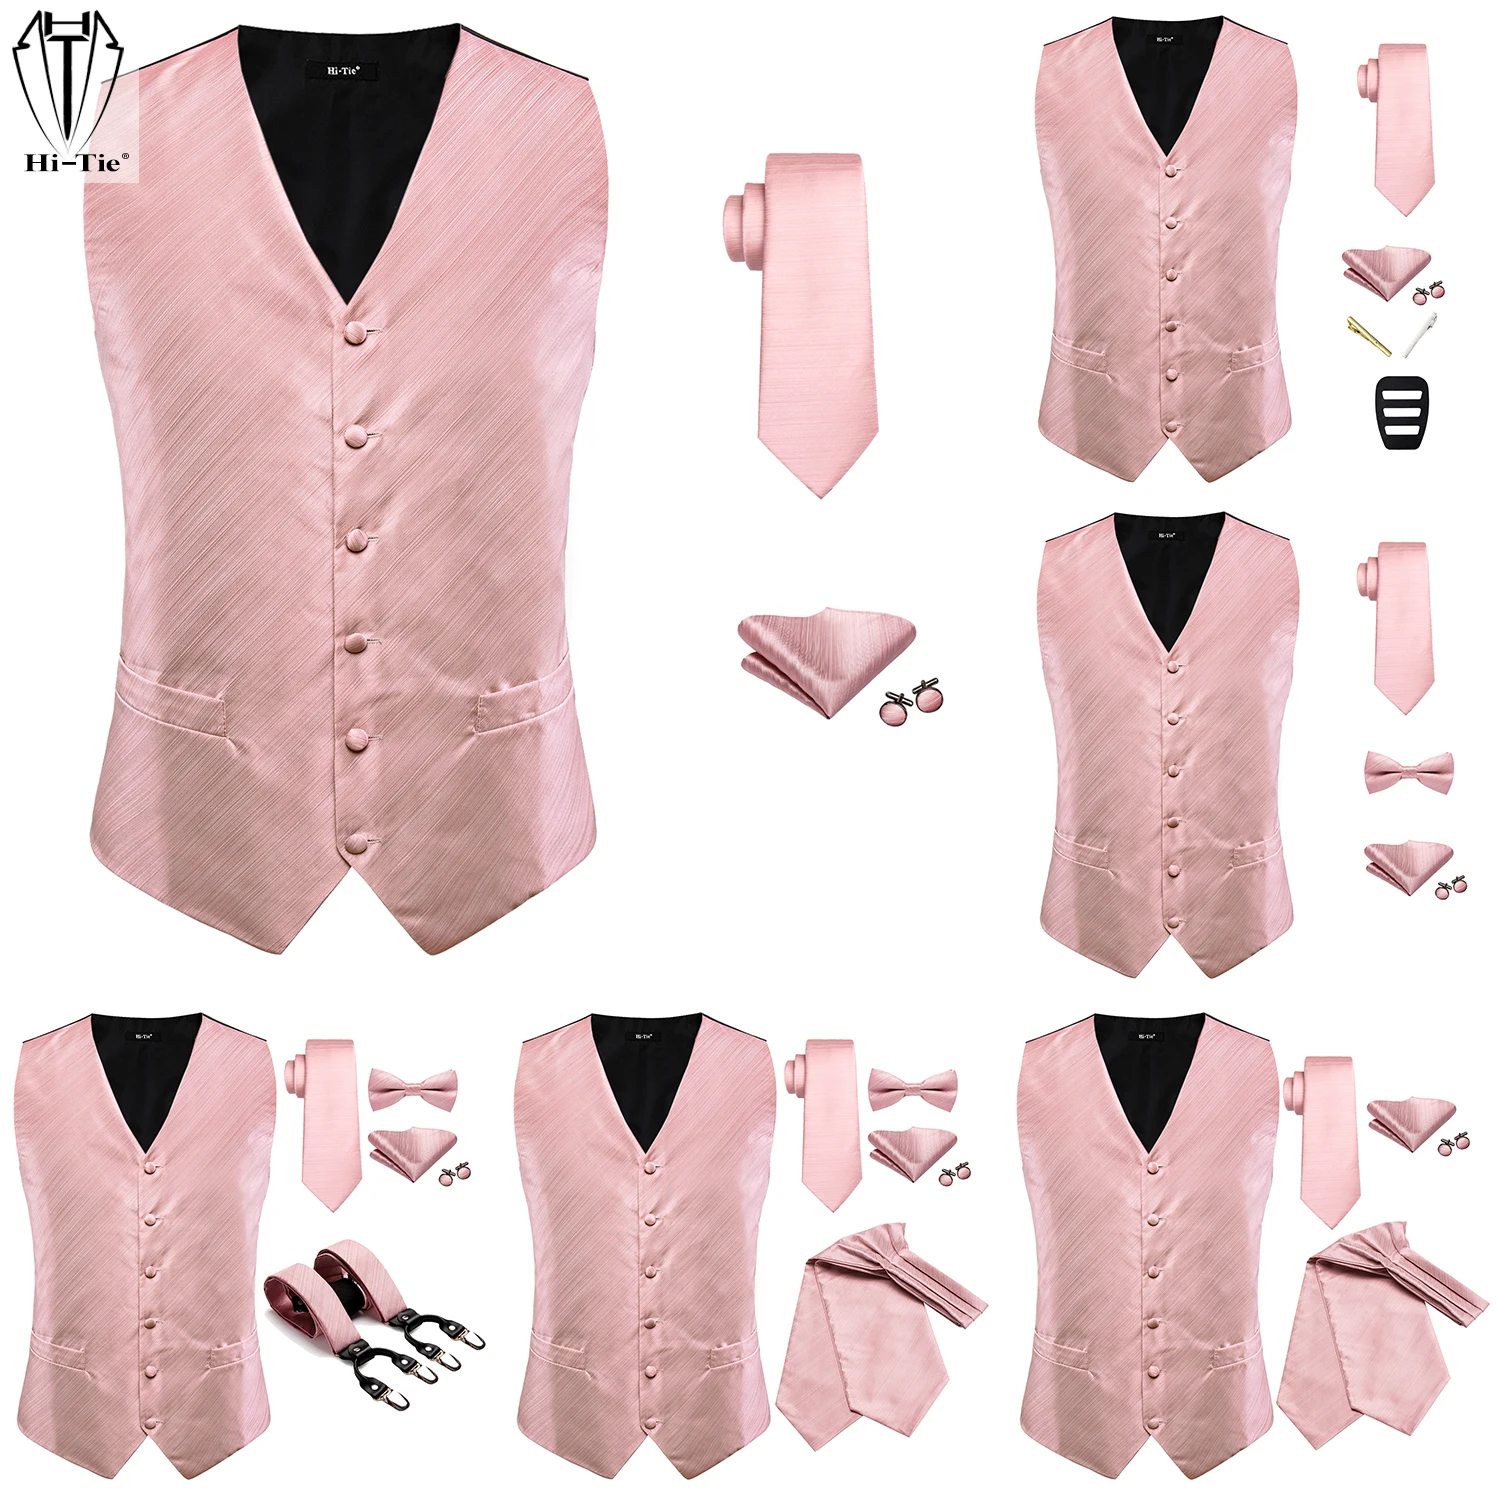 

Hi-Tie Silk Mens Vest Necktie Bowtie Suspender Ascot Peach Pink Dress Waist Jacket Tie Cravat Braces Hanky Cuff links Wedding